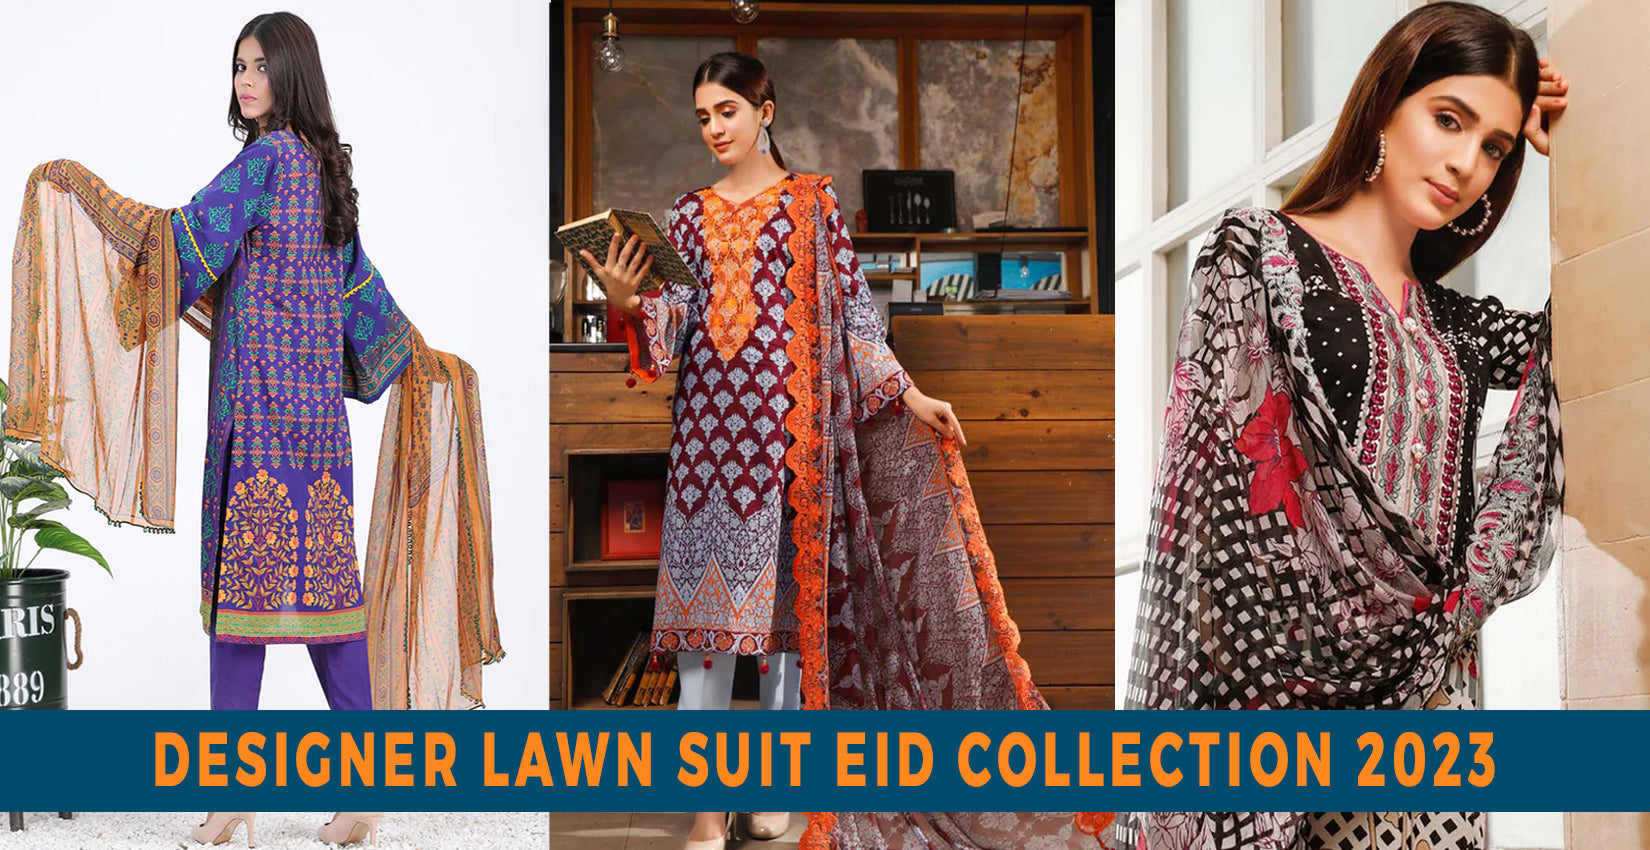 3 Piece Designer Lawn Suit Eid Collection 2023